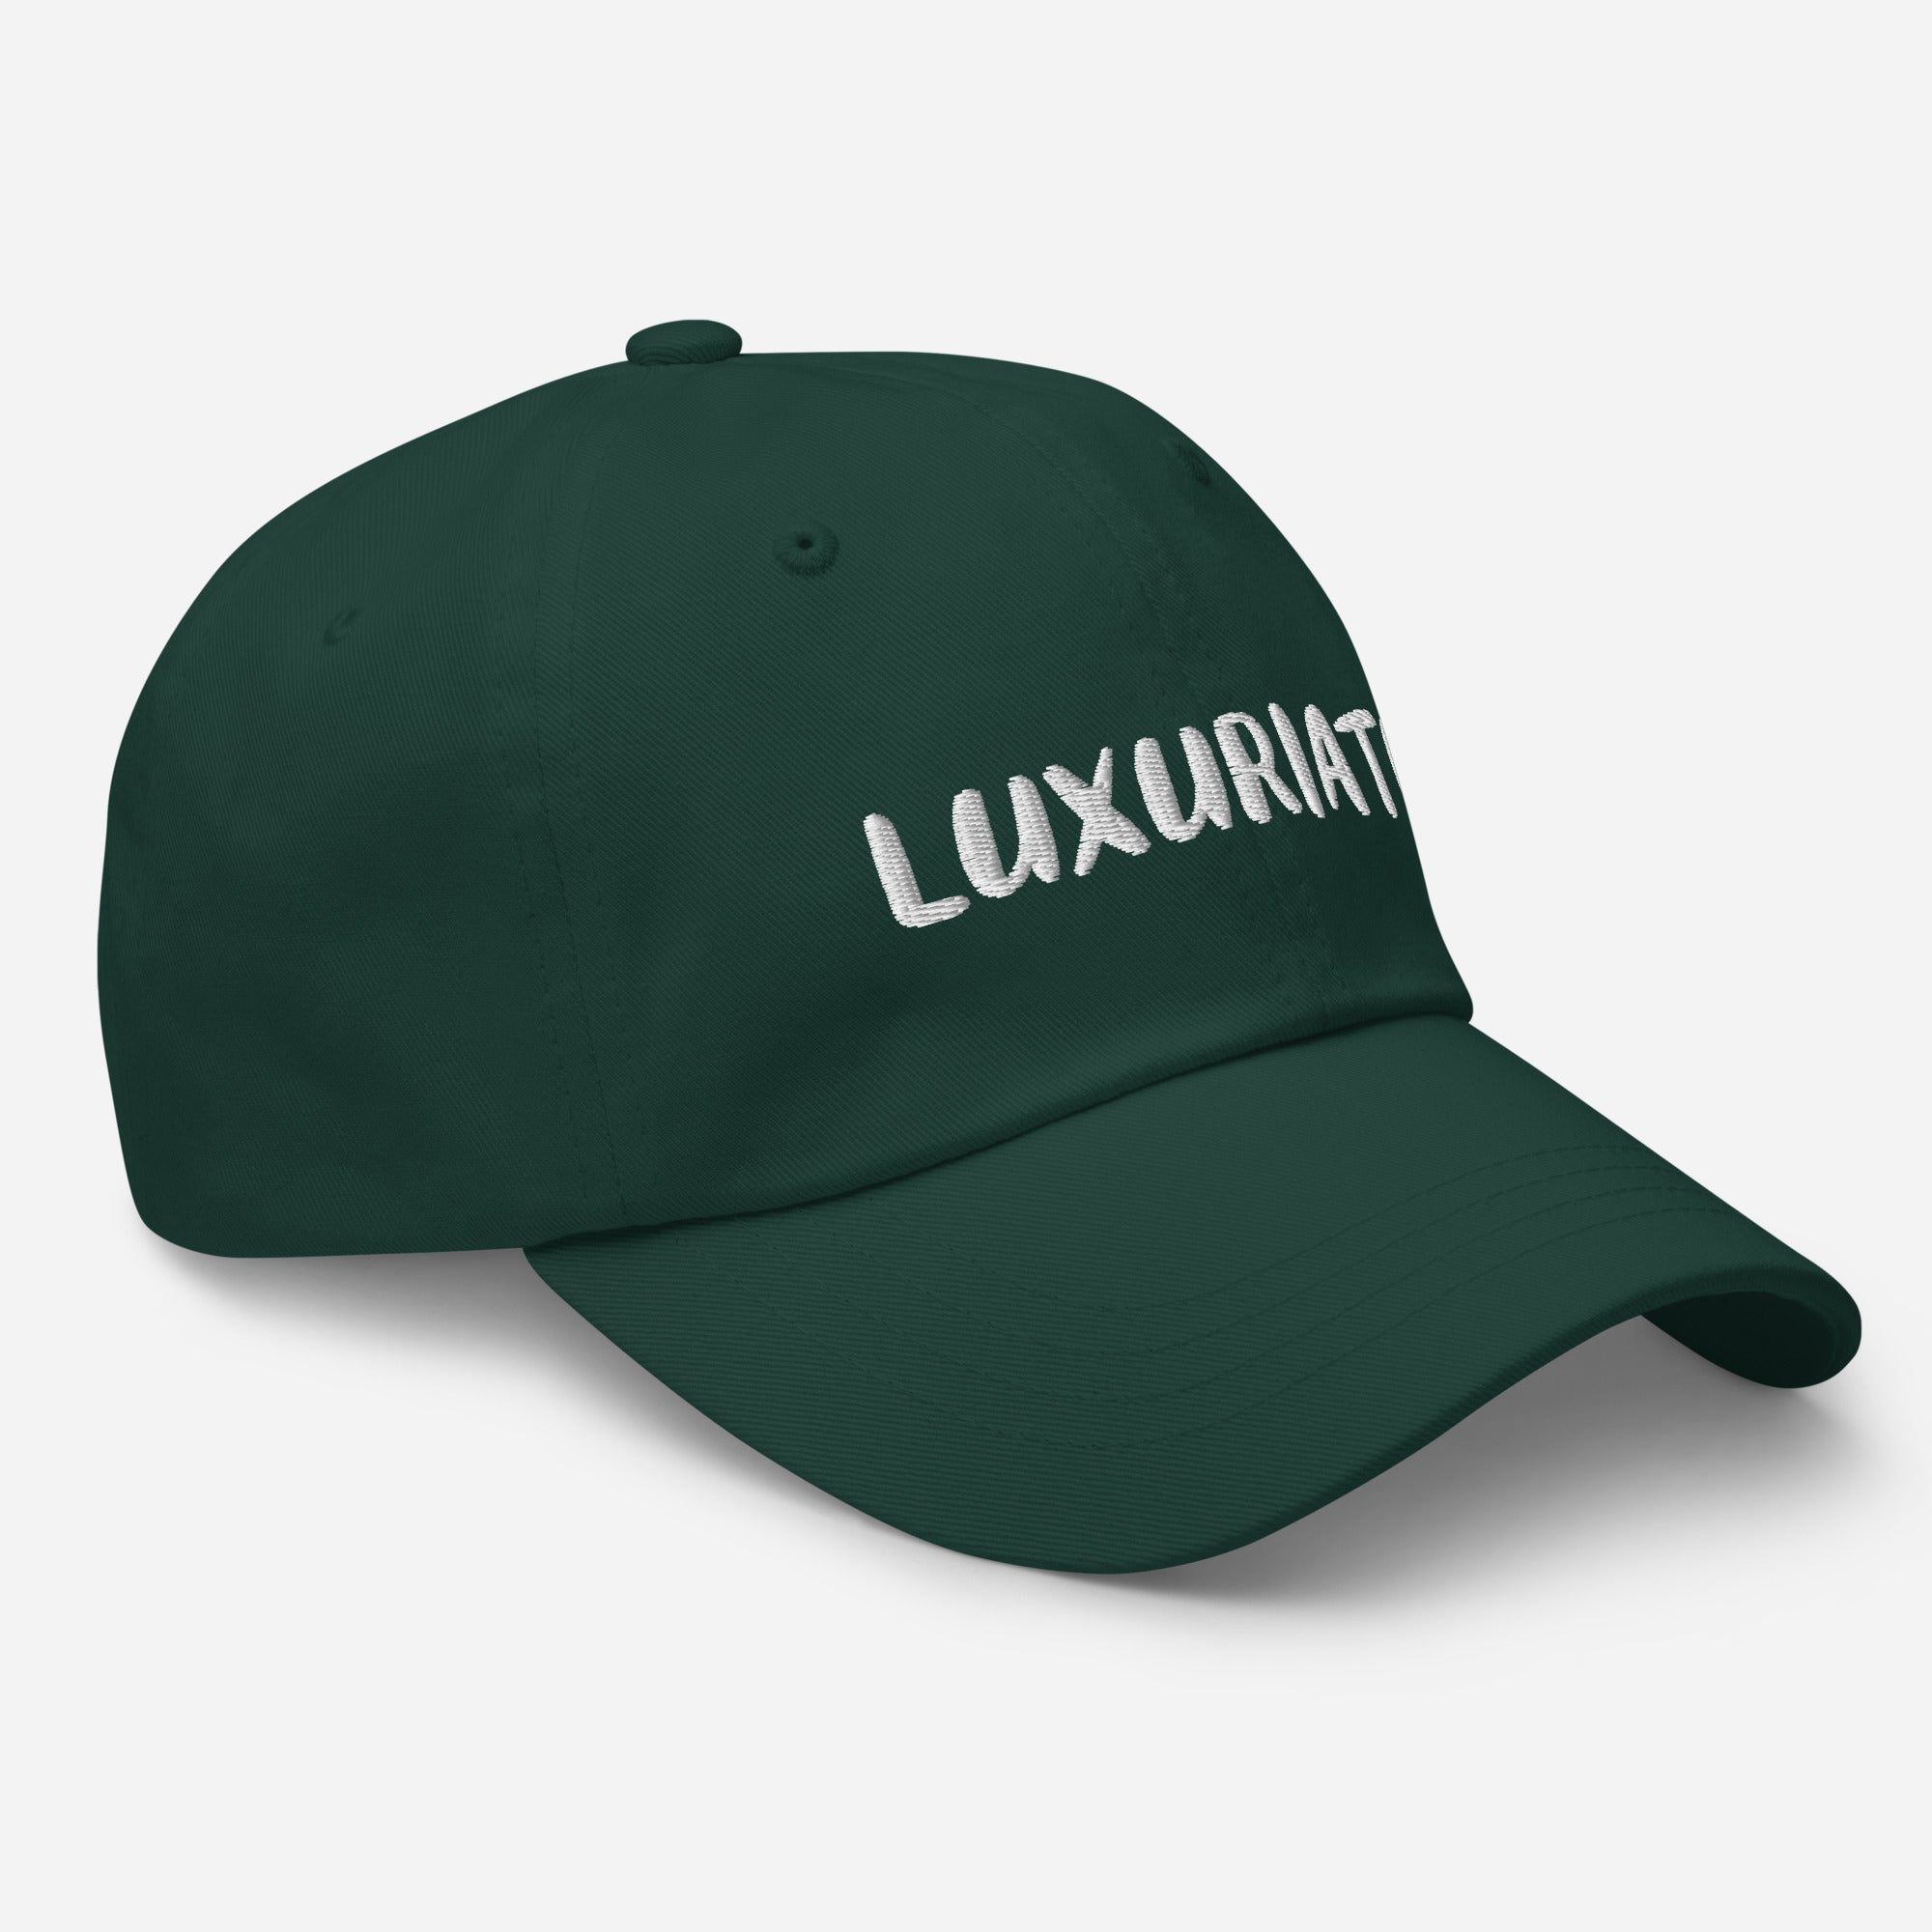 Lux Edition Dad hat